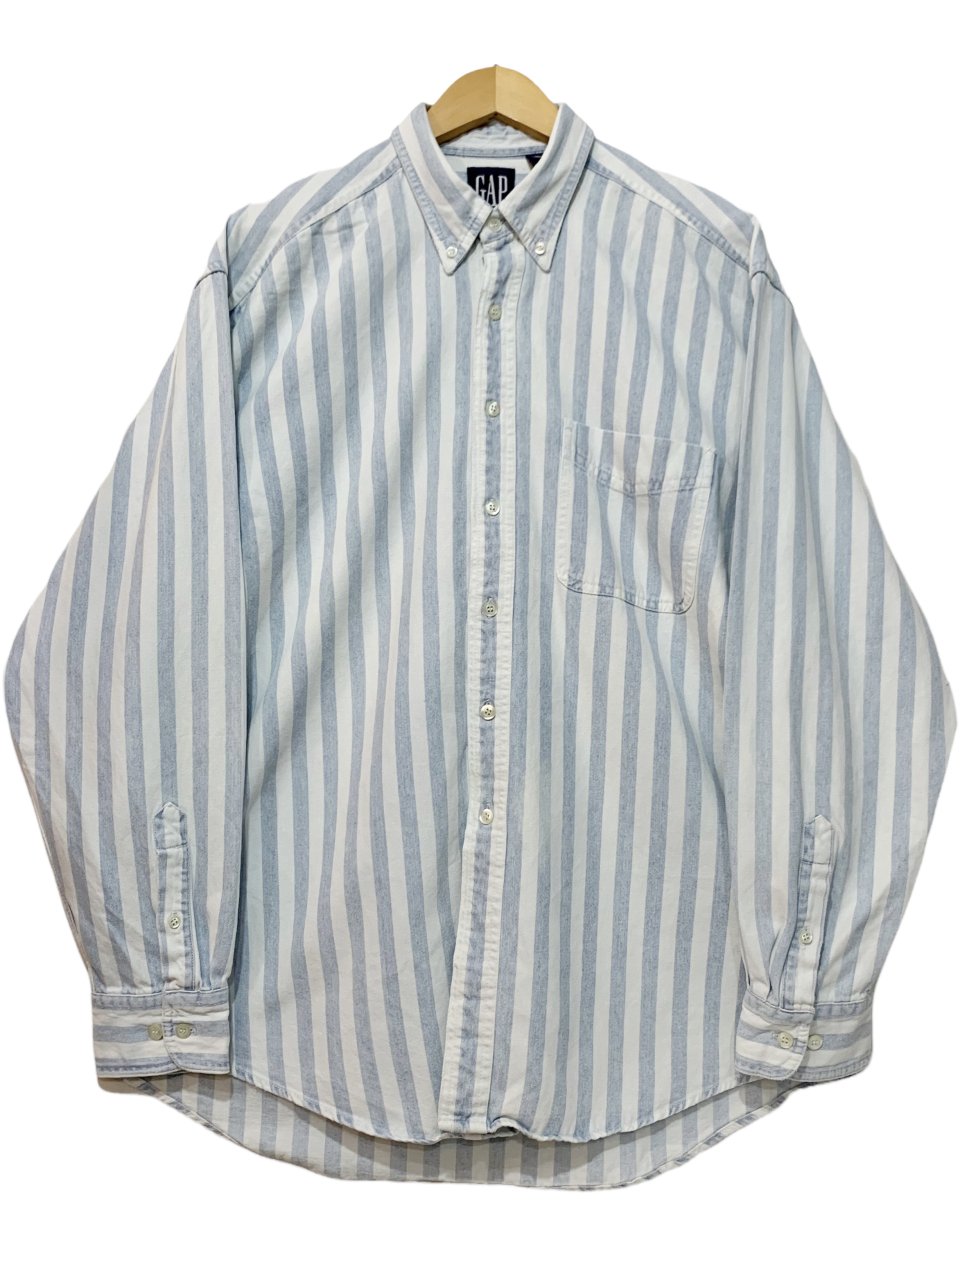 90s OLD GAP Denim Stripe BD L/S Shirt 青白 L オールドギャップ 長袖 